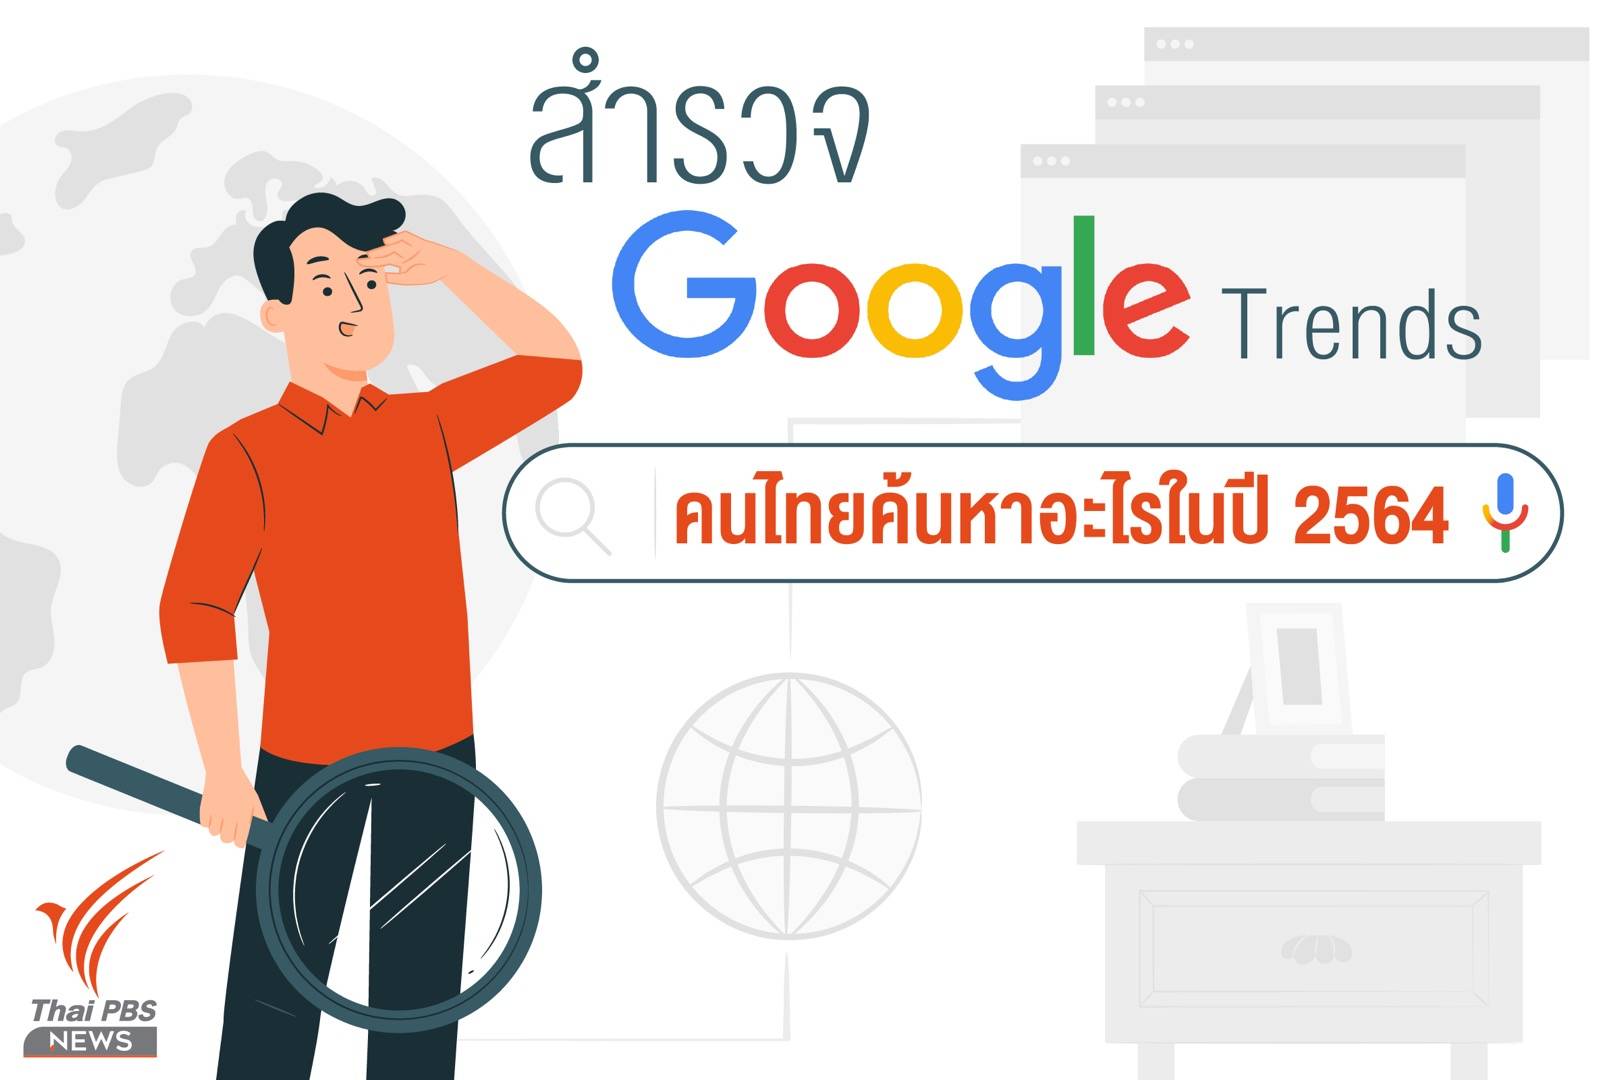 สำรวจ Google Trends คนไทยหาอะไรในปี 2564